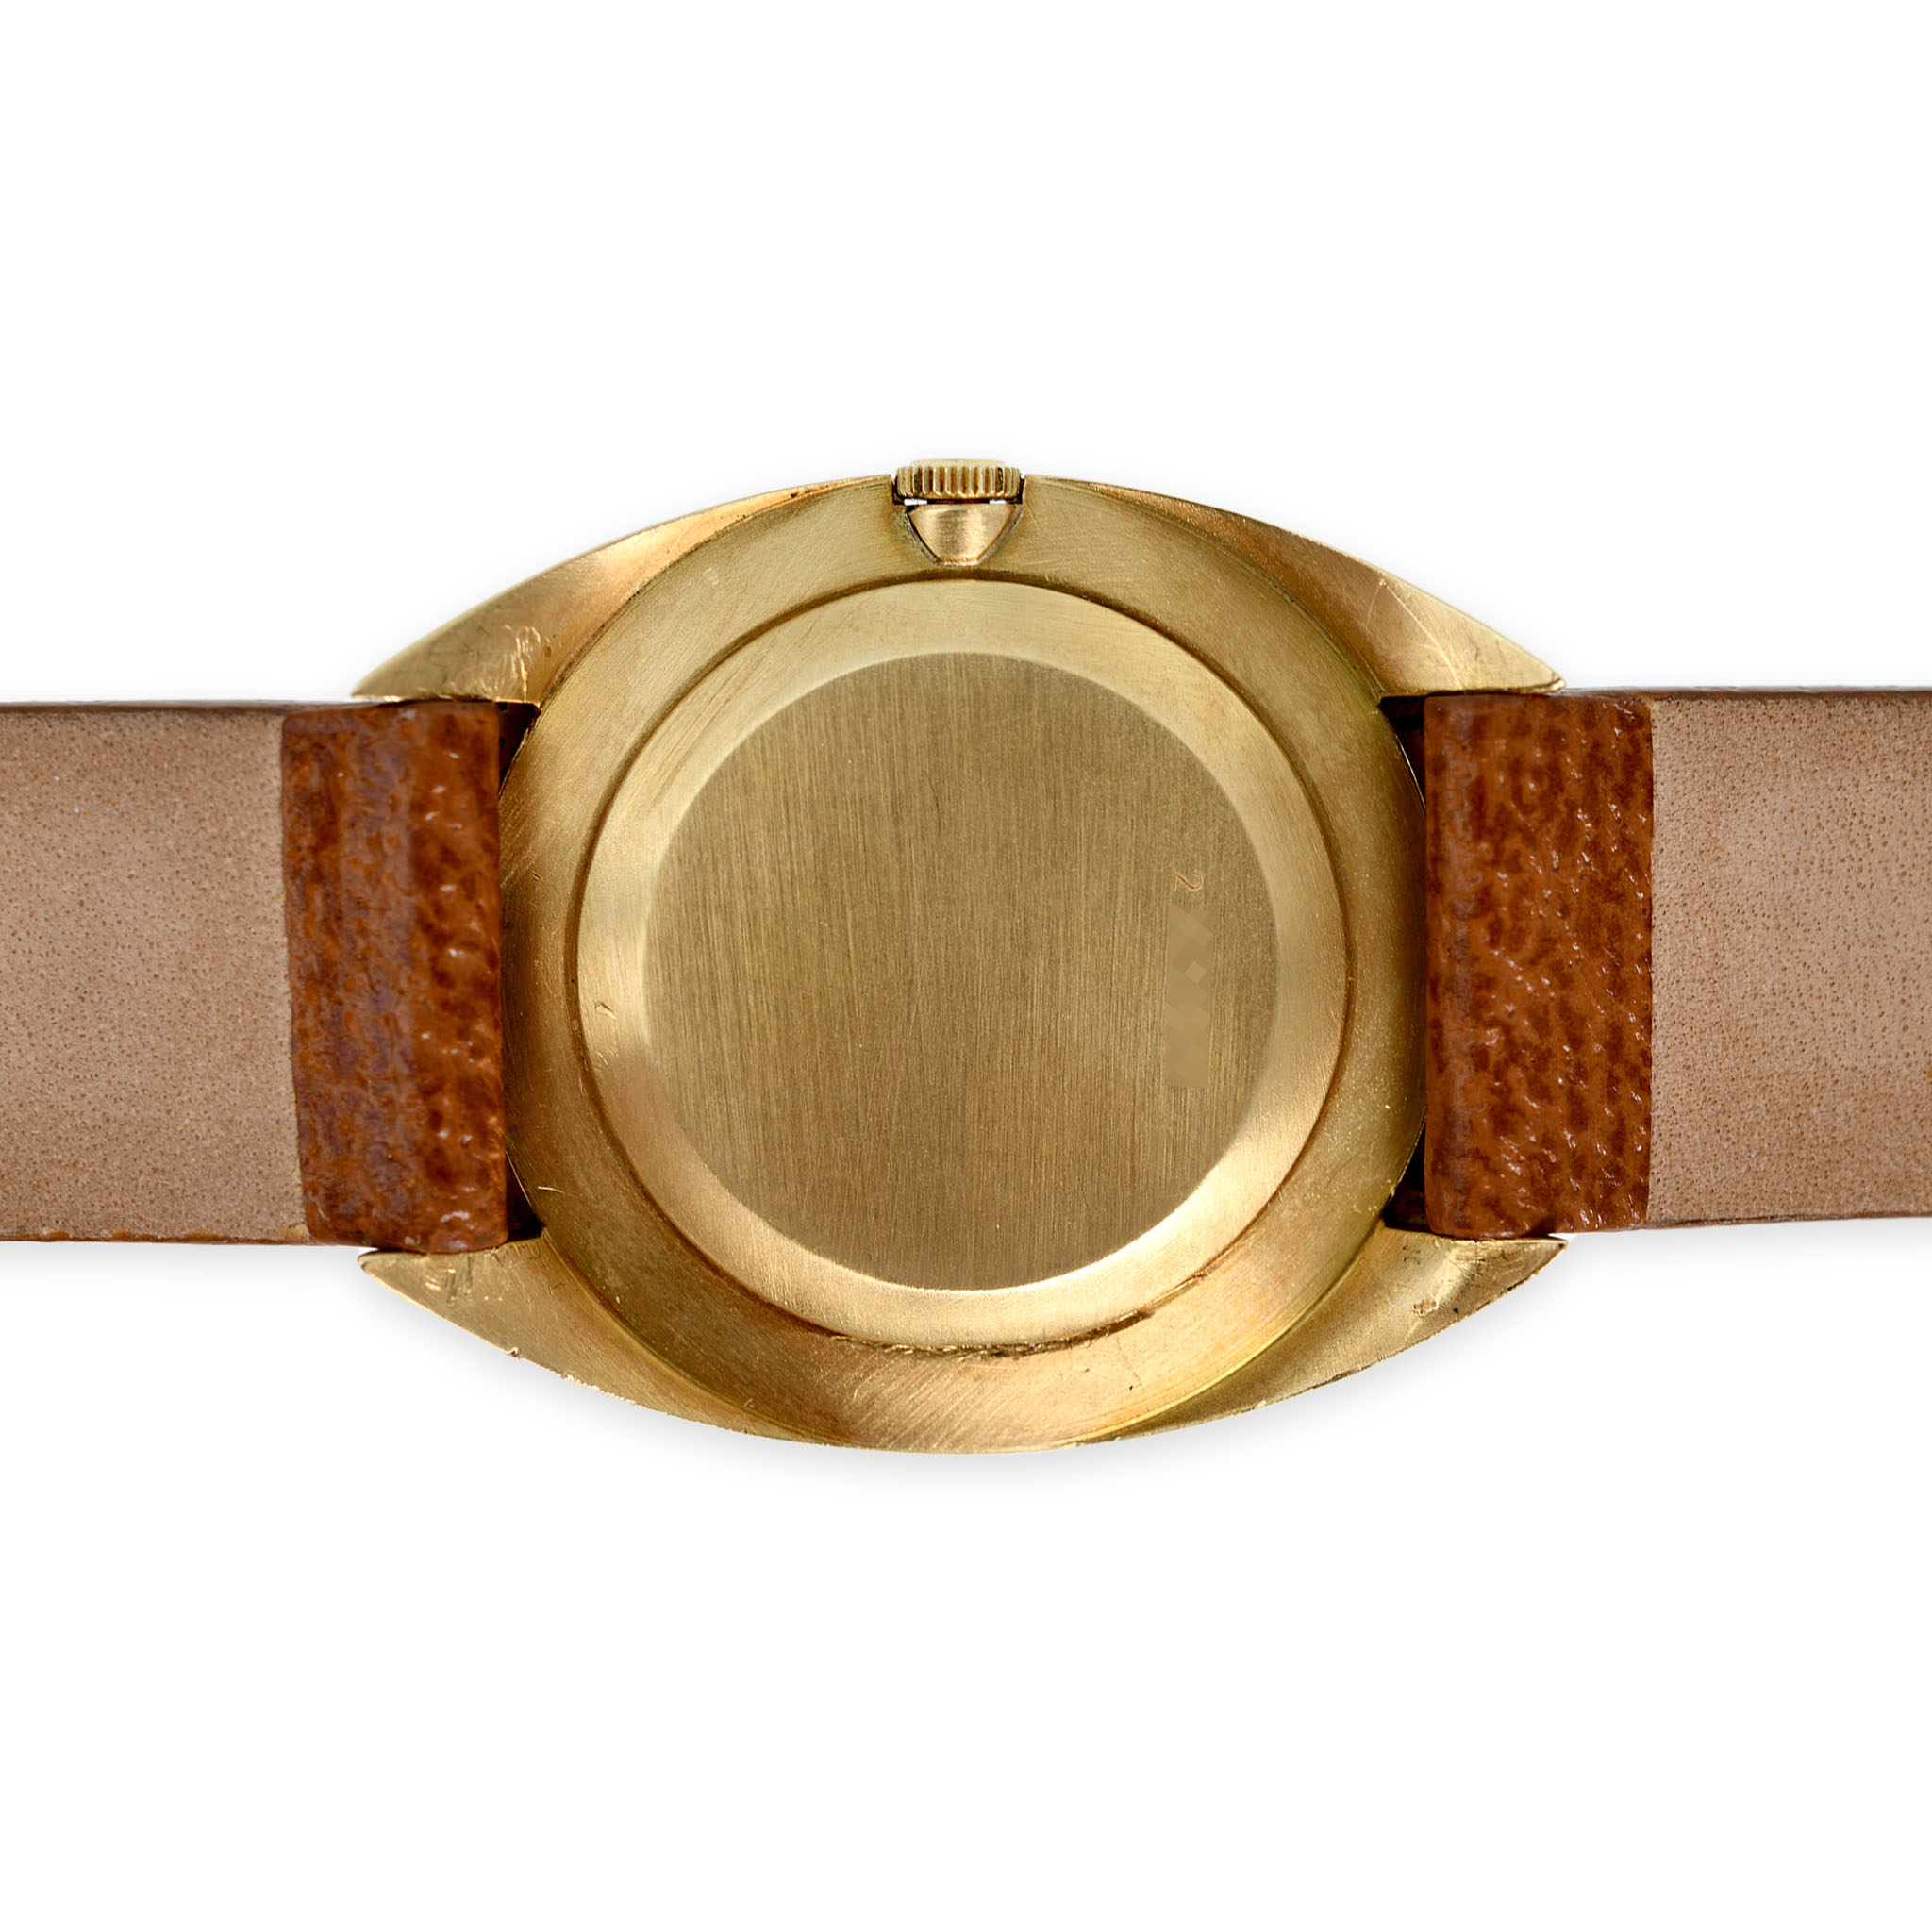 Audemars-Piguet-dress-watch-retailed-by-gubelin-img-main2